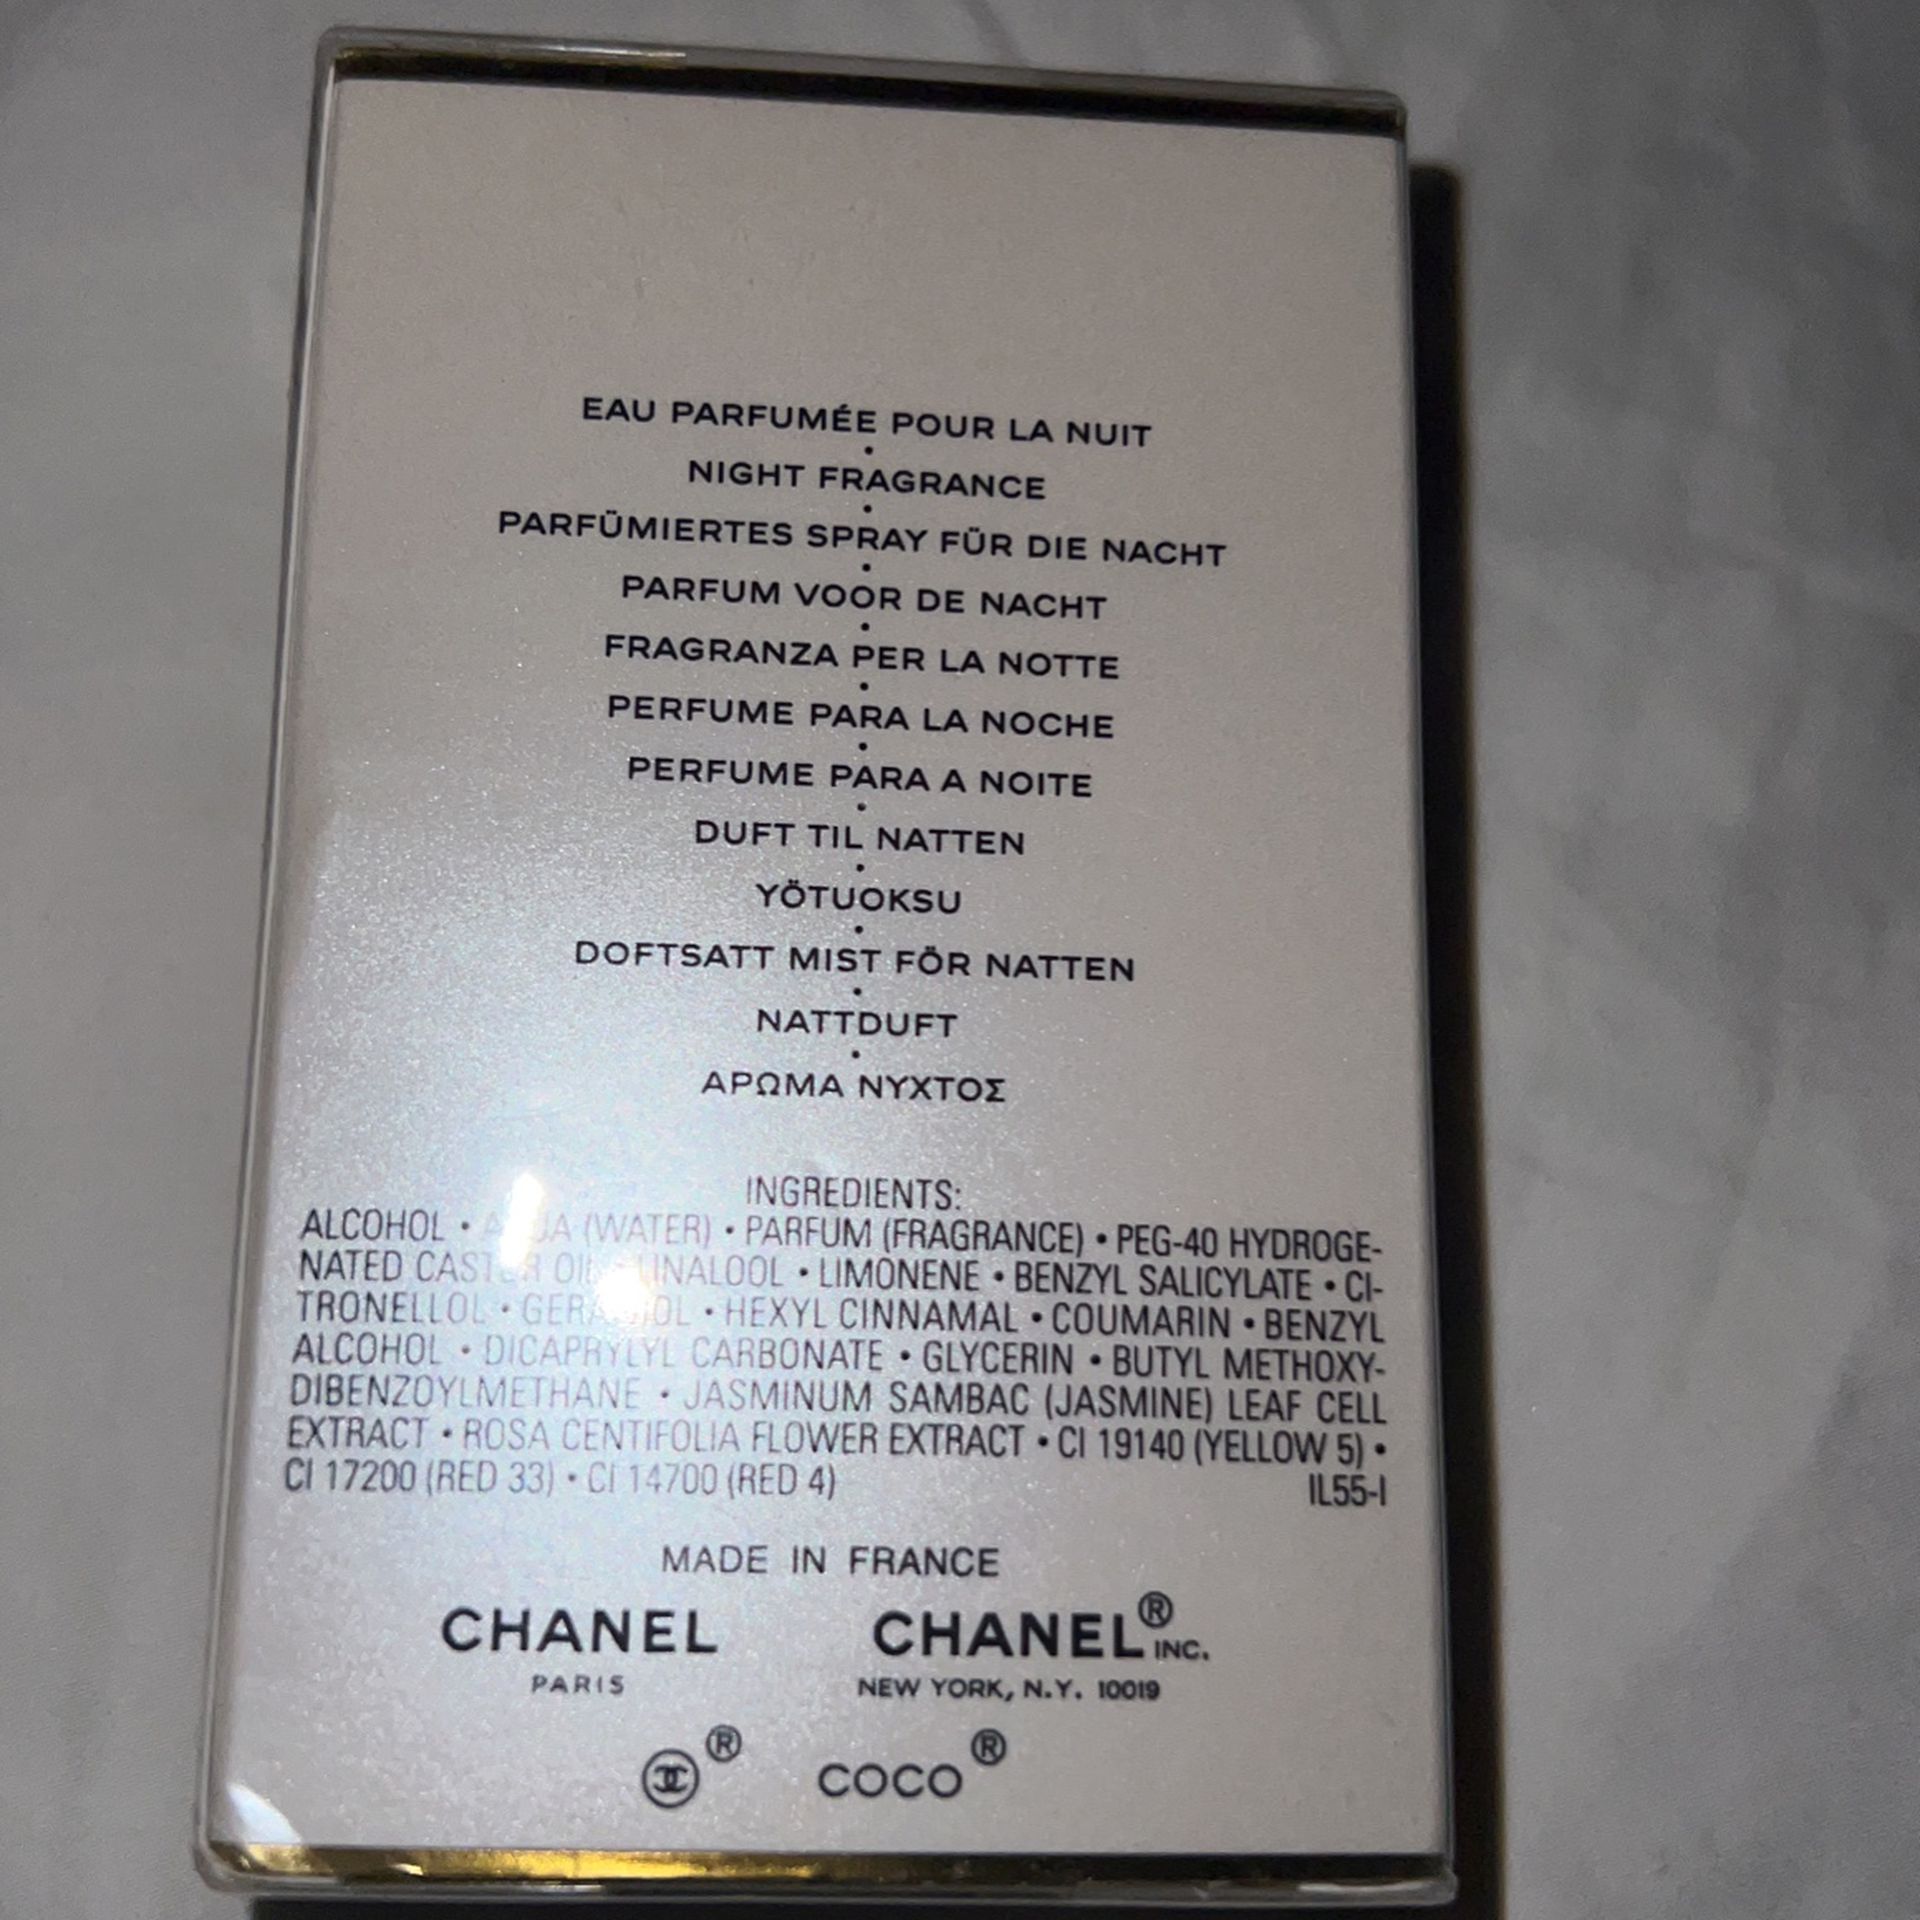 Coco Mademoiselle Chanel Paris 50ML for Sale in Pico Rivera, CA - OfferUp